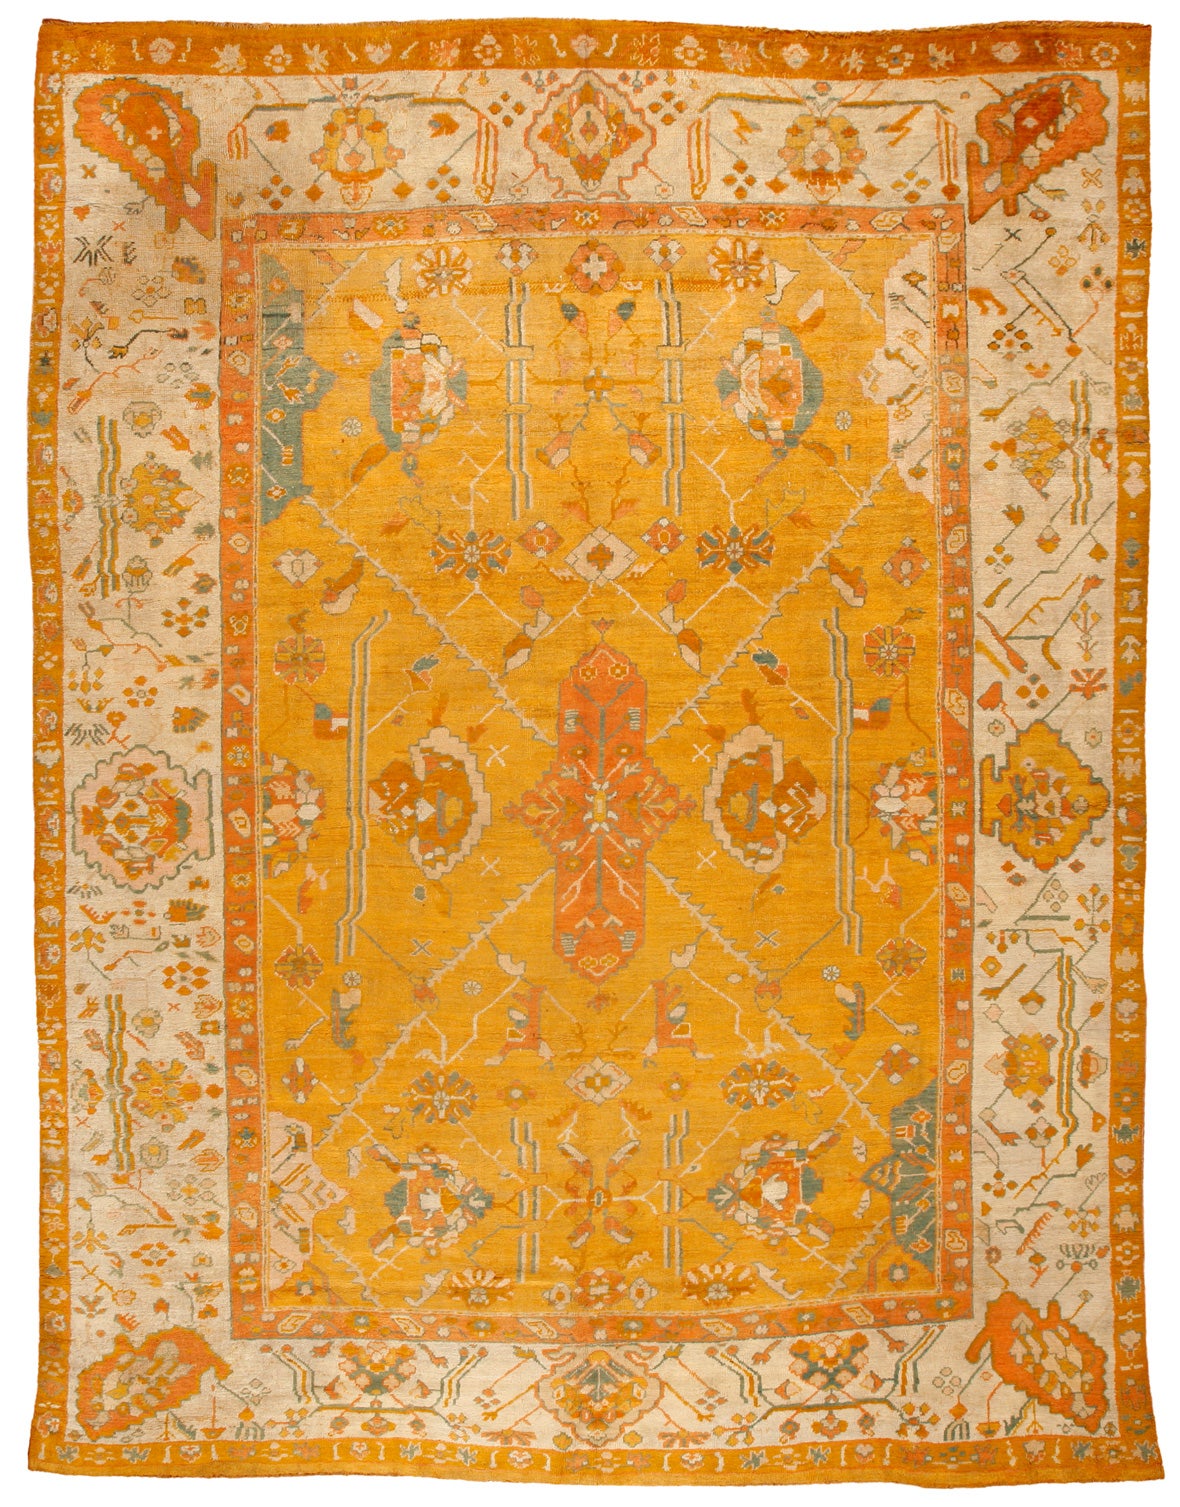 Antique Mid-19th Century Turkish Oushak Carpet For Sale